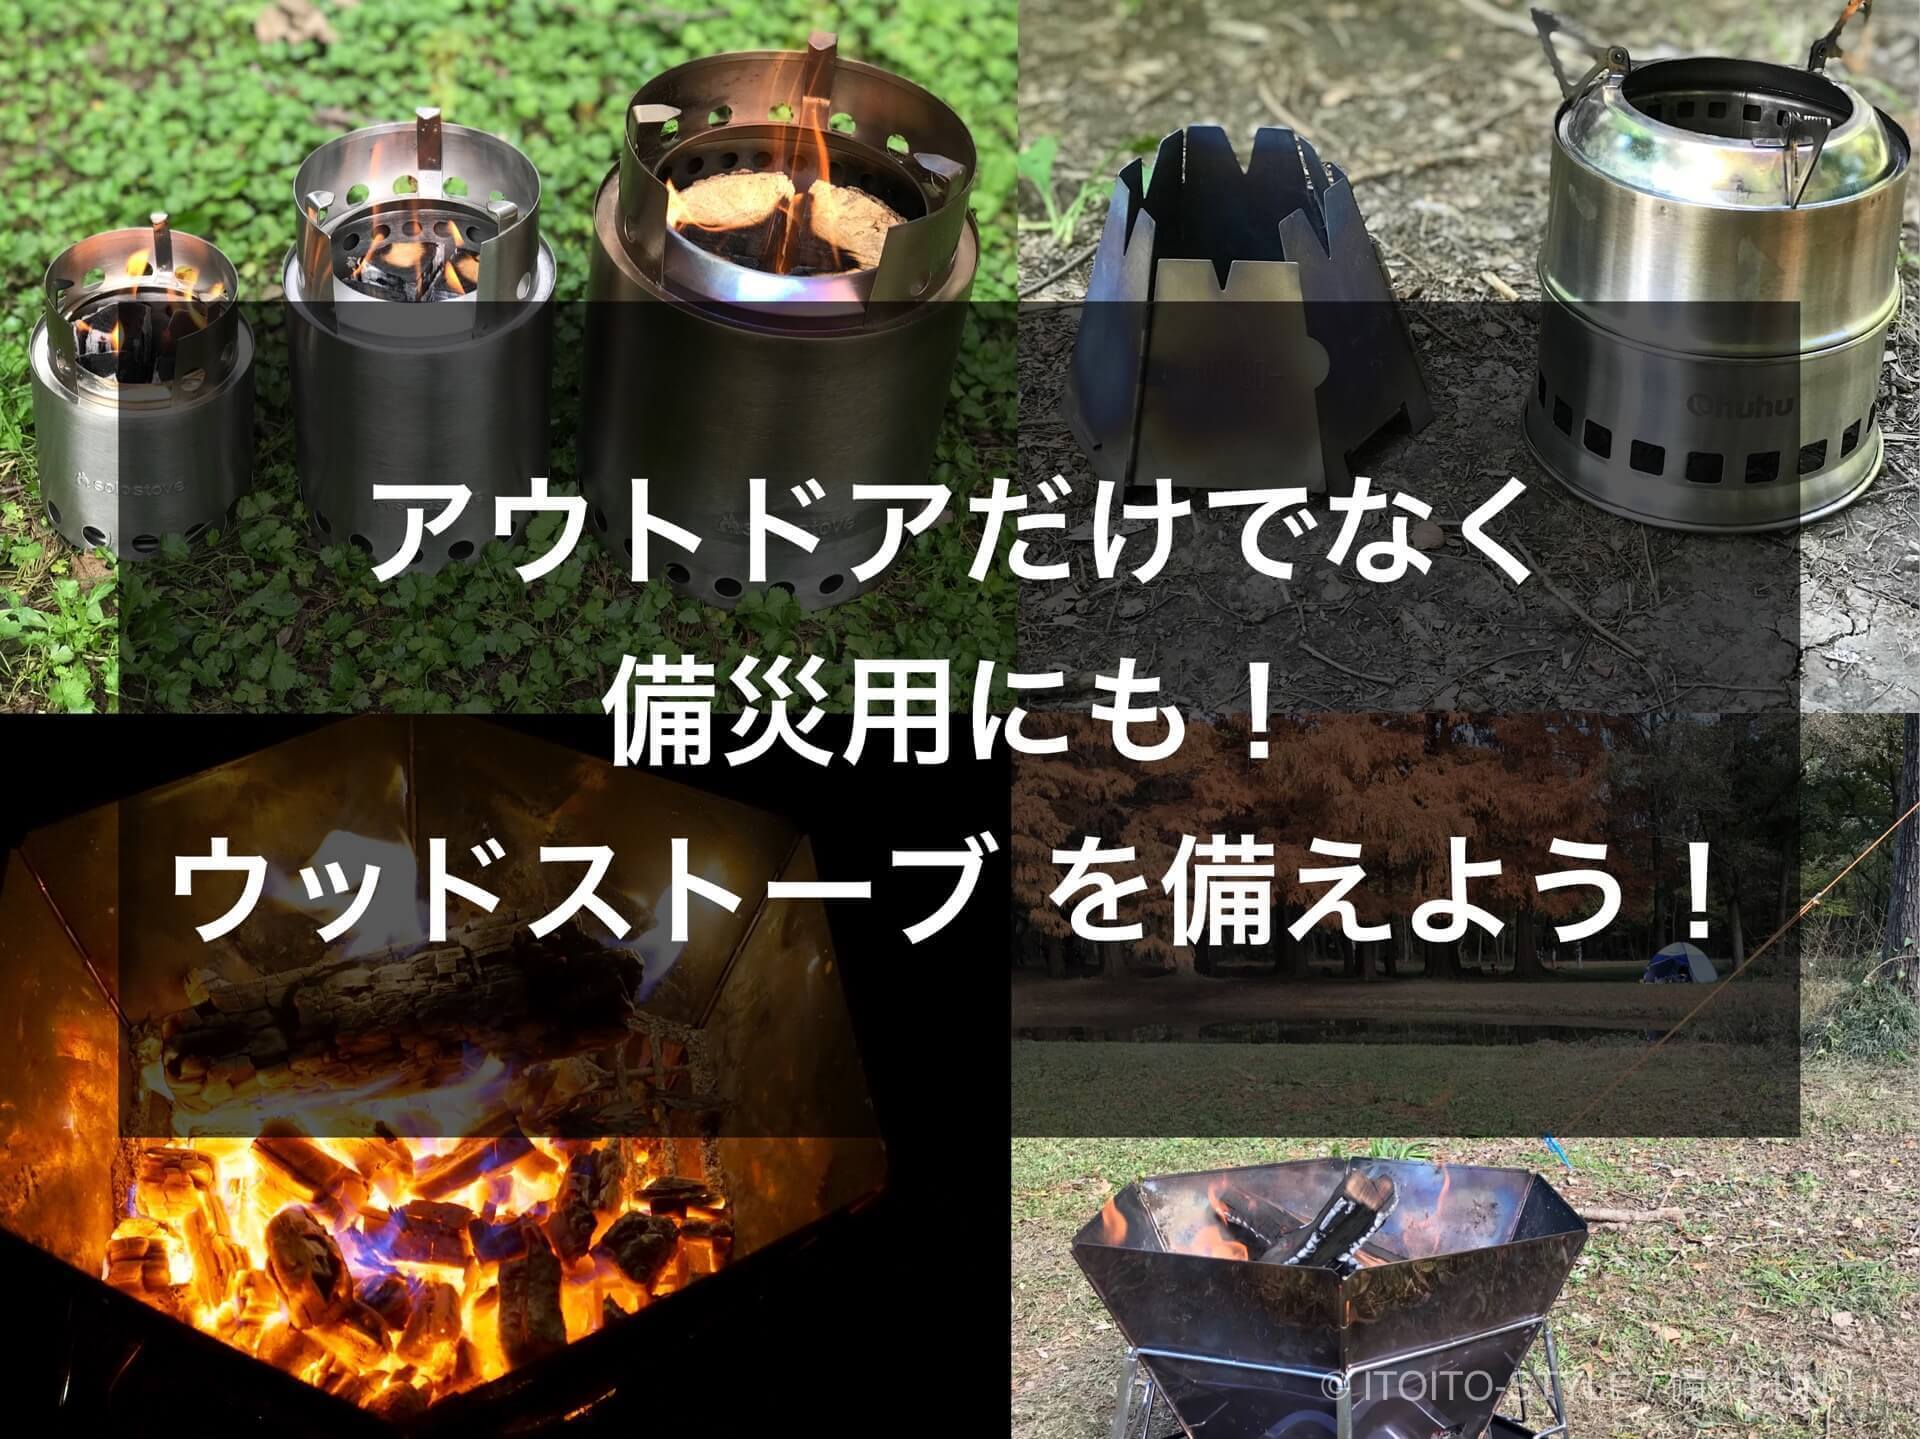 枯れ木や薪が燃料の ウッドストーブ 焚き火台 を備えよう Itoito Style